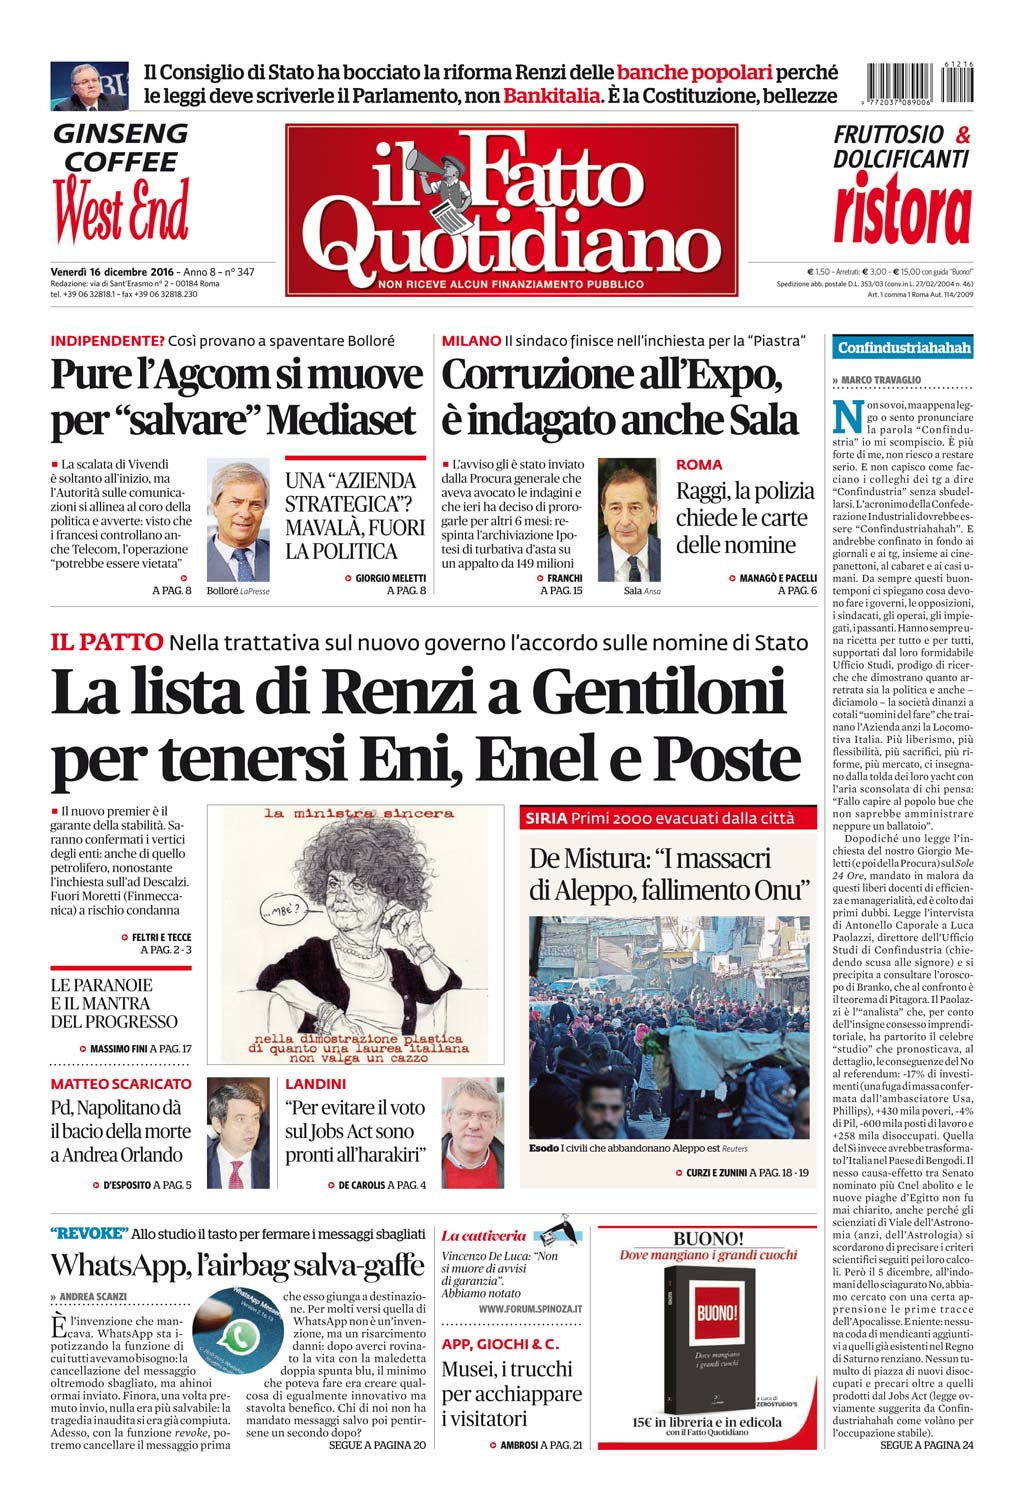 Prima Pagina Il Fatto Quotidiano - La lista di Renzi a Gentiloni per tenersi Eni, Enel e Poste